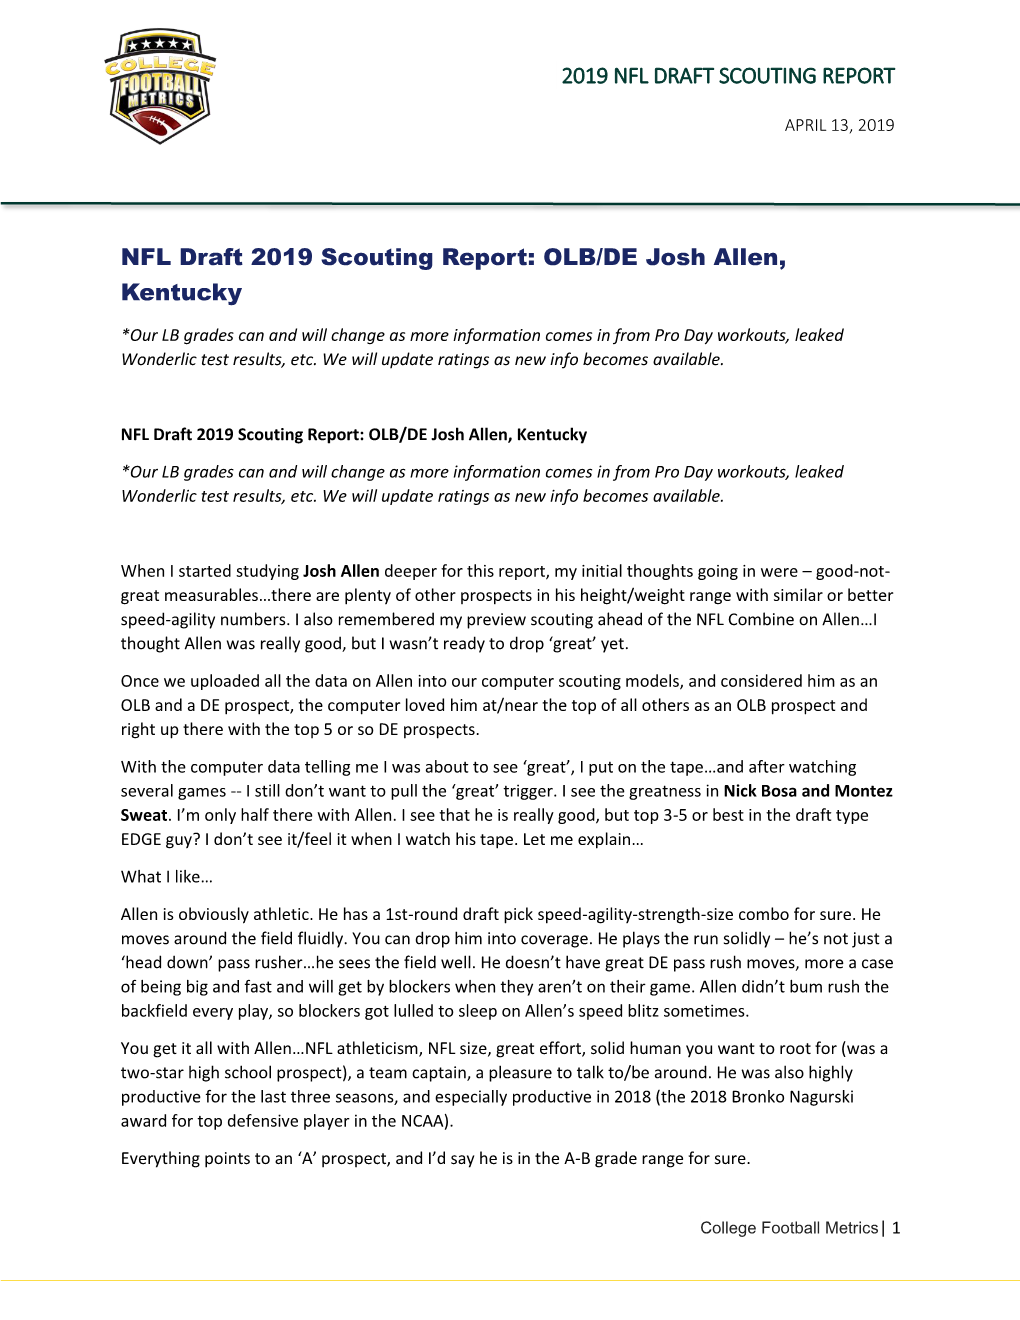 NFL Draft 2019 Scouting Report: OLB/DE Josh Allen, Kentucky